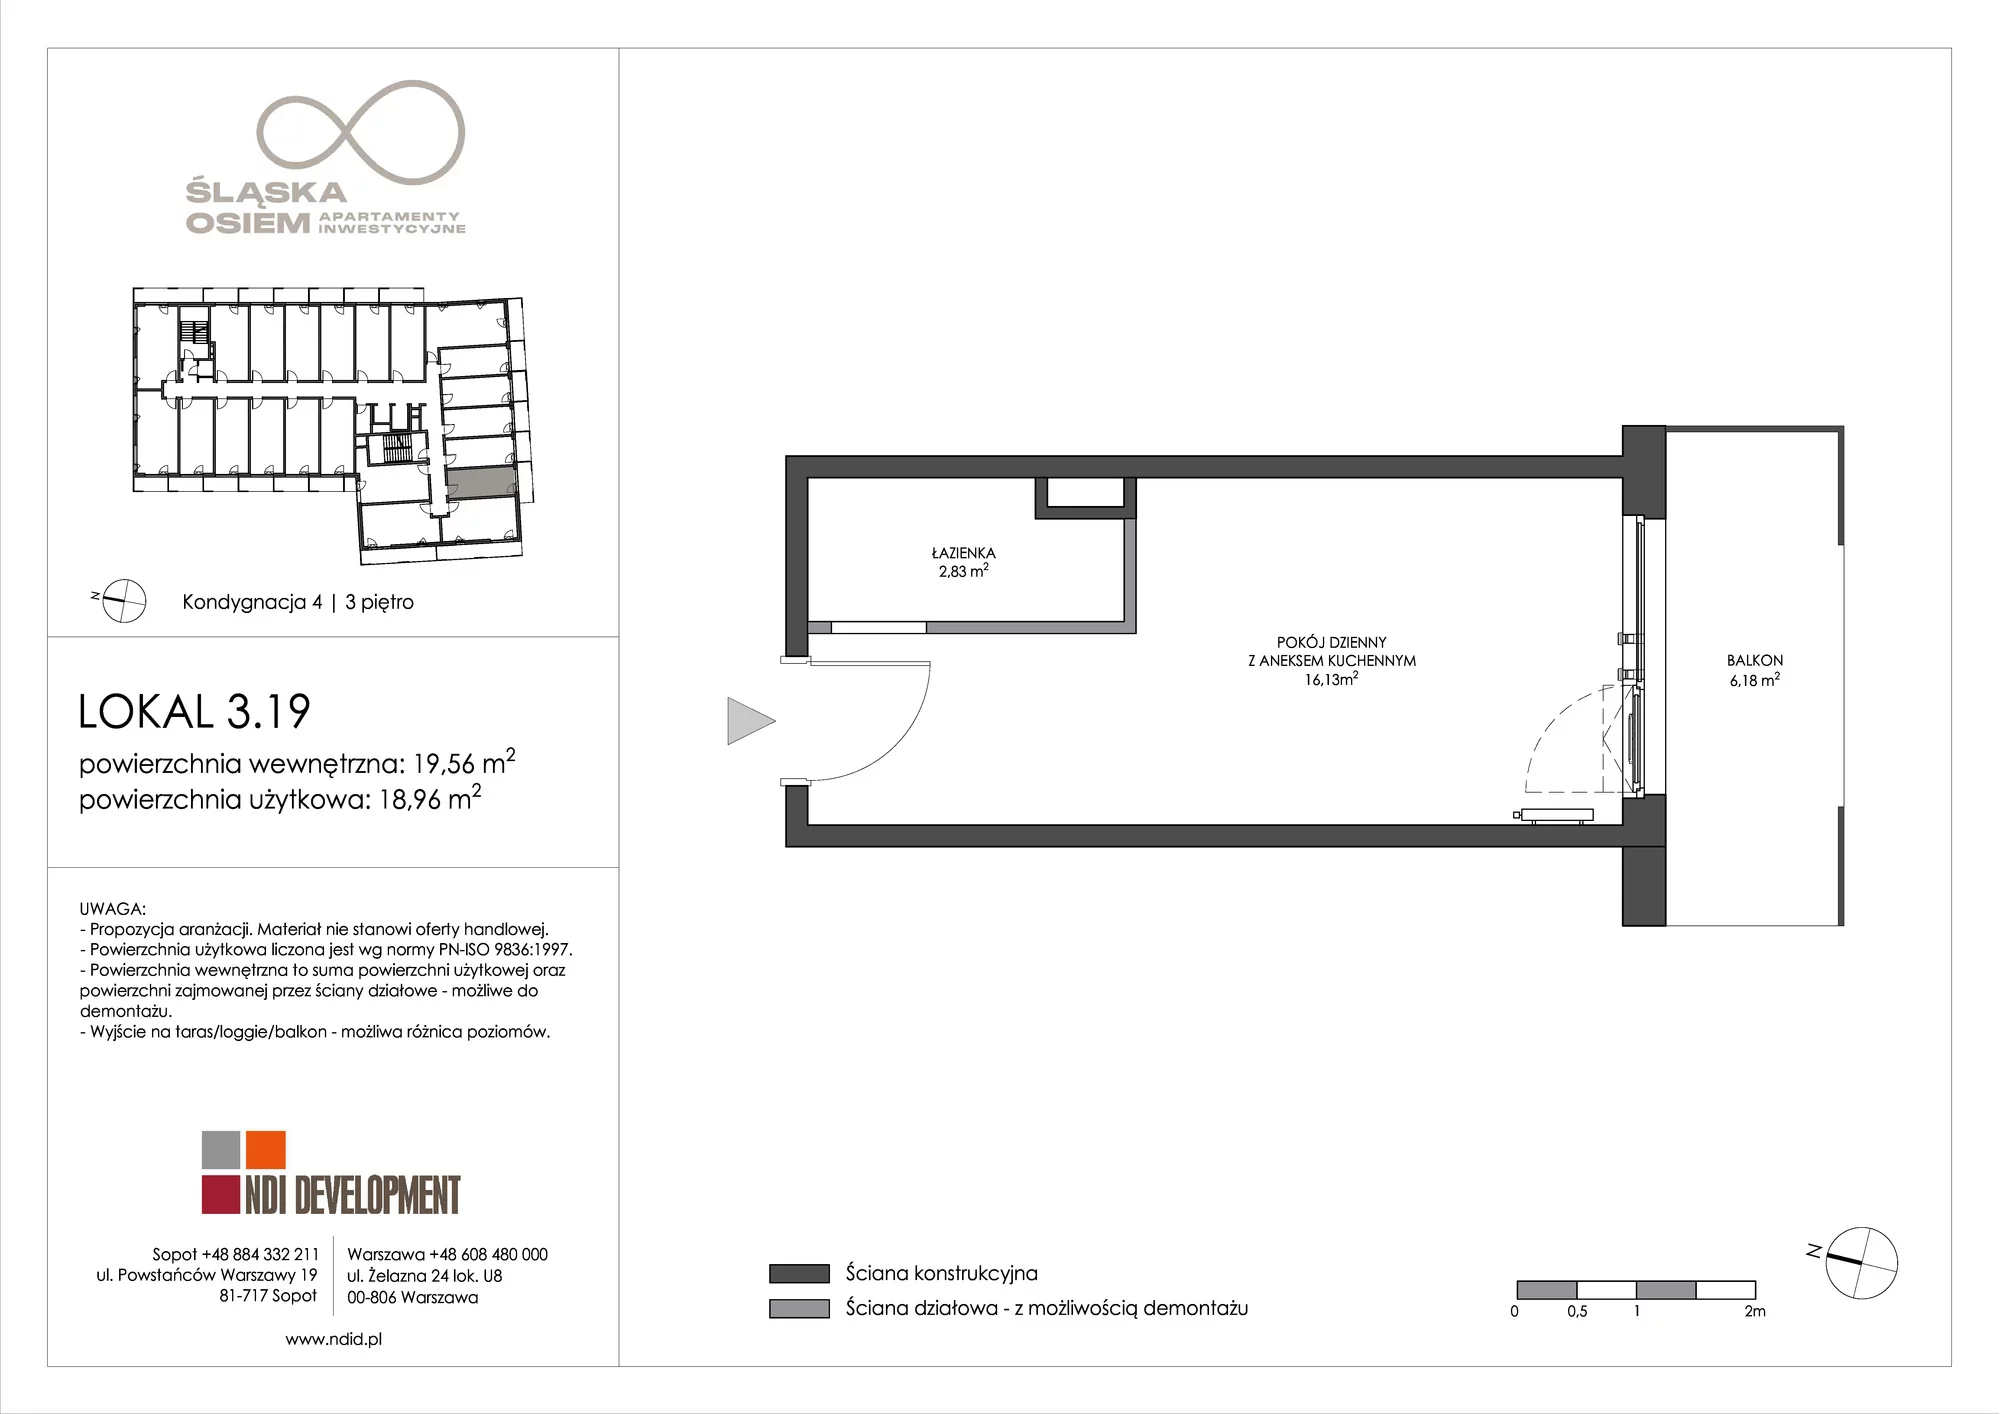 Apartament inwestycyjny 19,56 m², piętro 3, oferta nr 3.19, Śląska Osiem, Gdańsk, Przymorze, ul. Śląska 8